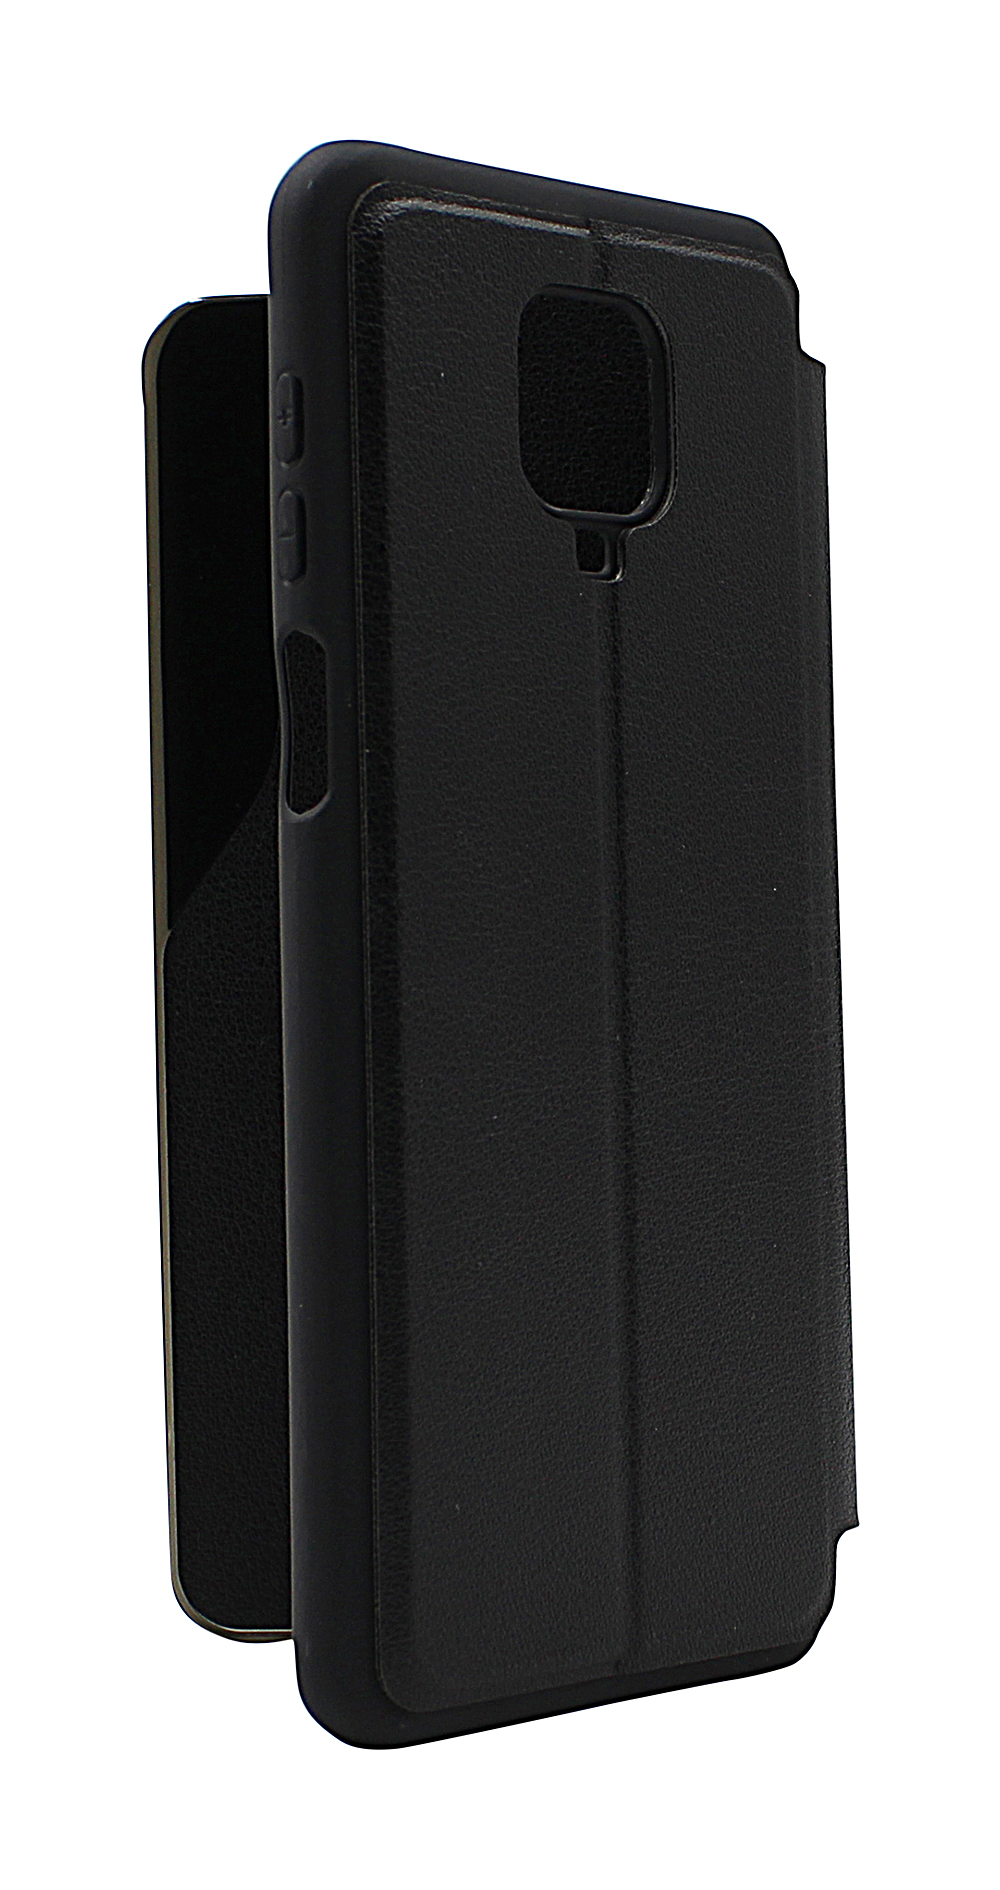 billigamobilskydd.seSmart Flip Cover Xiaomi Redmi Note 9s / Note 9 Pro